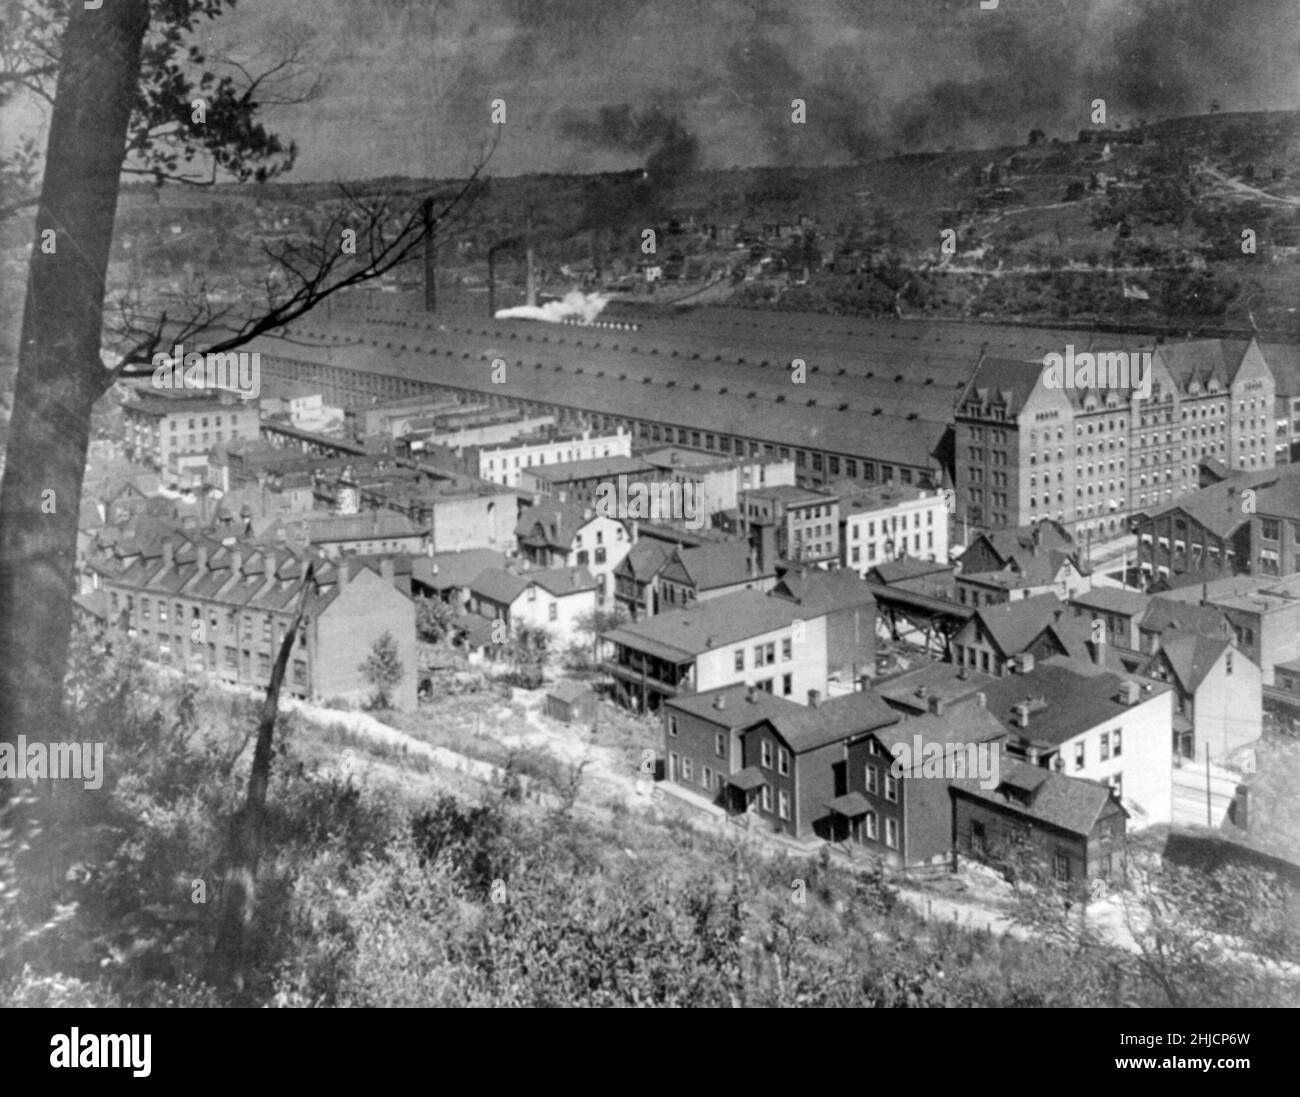 Westinghouse Electrical Works, East Pittsburg, Pennsylvania, USA. Stereograph mit einer erhöhten Ansicht einer Ansammlung von Gebäuden. Keystone View Company, 1905. Stockfoto